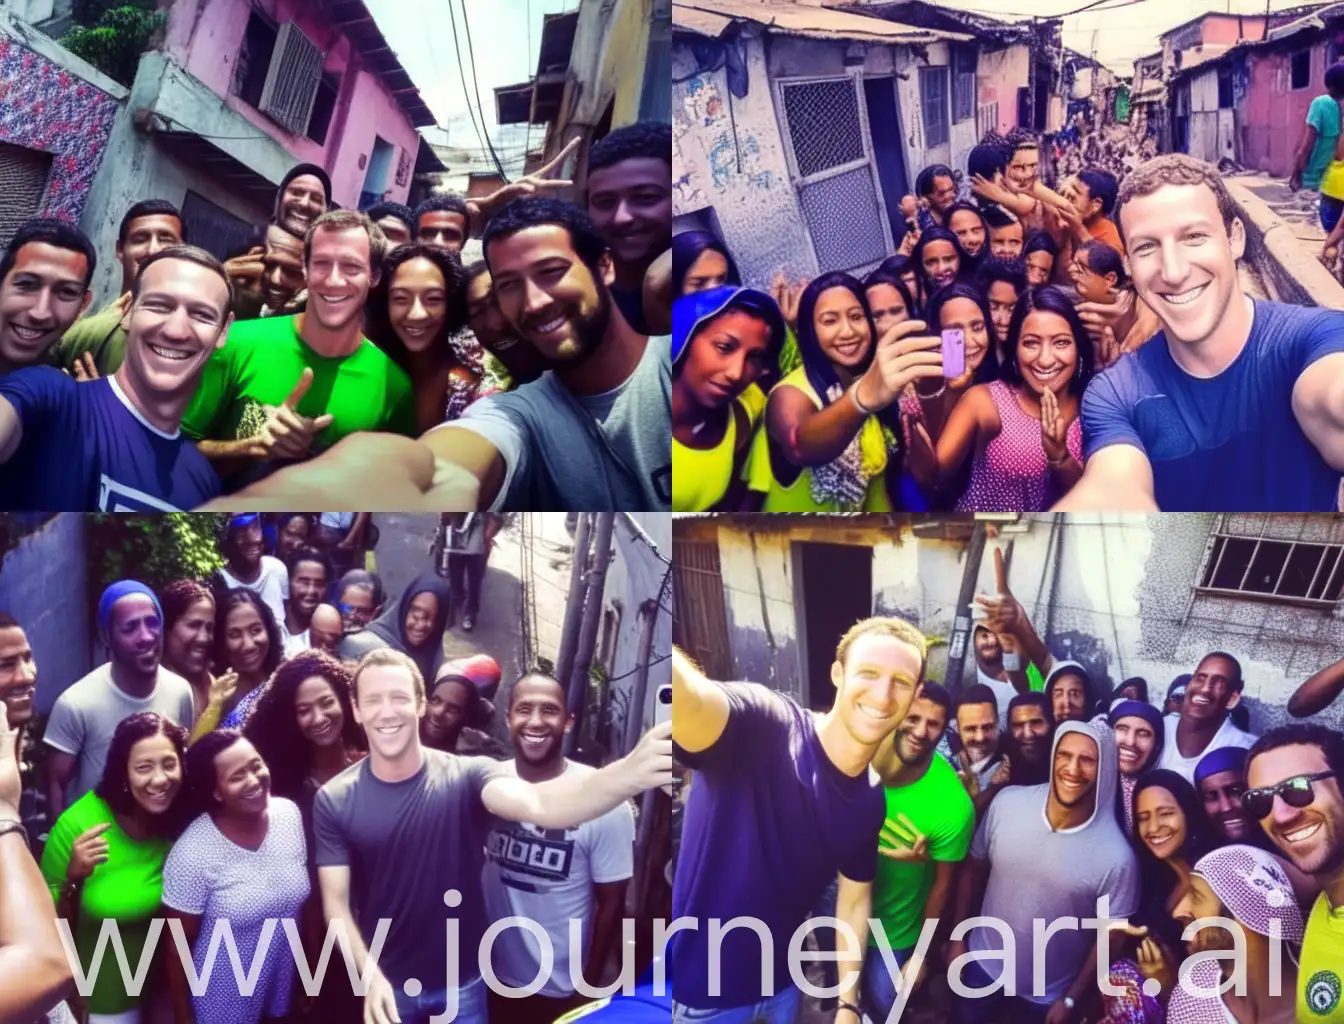 Mark Zuckerberg taking a selfie with people in a Brazilian favela 